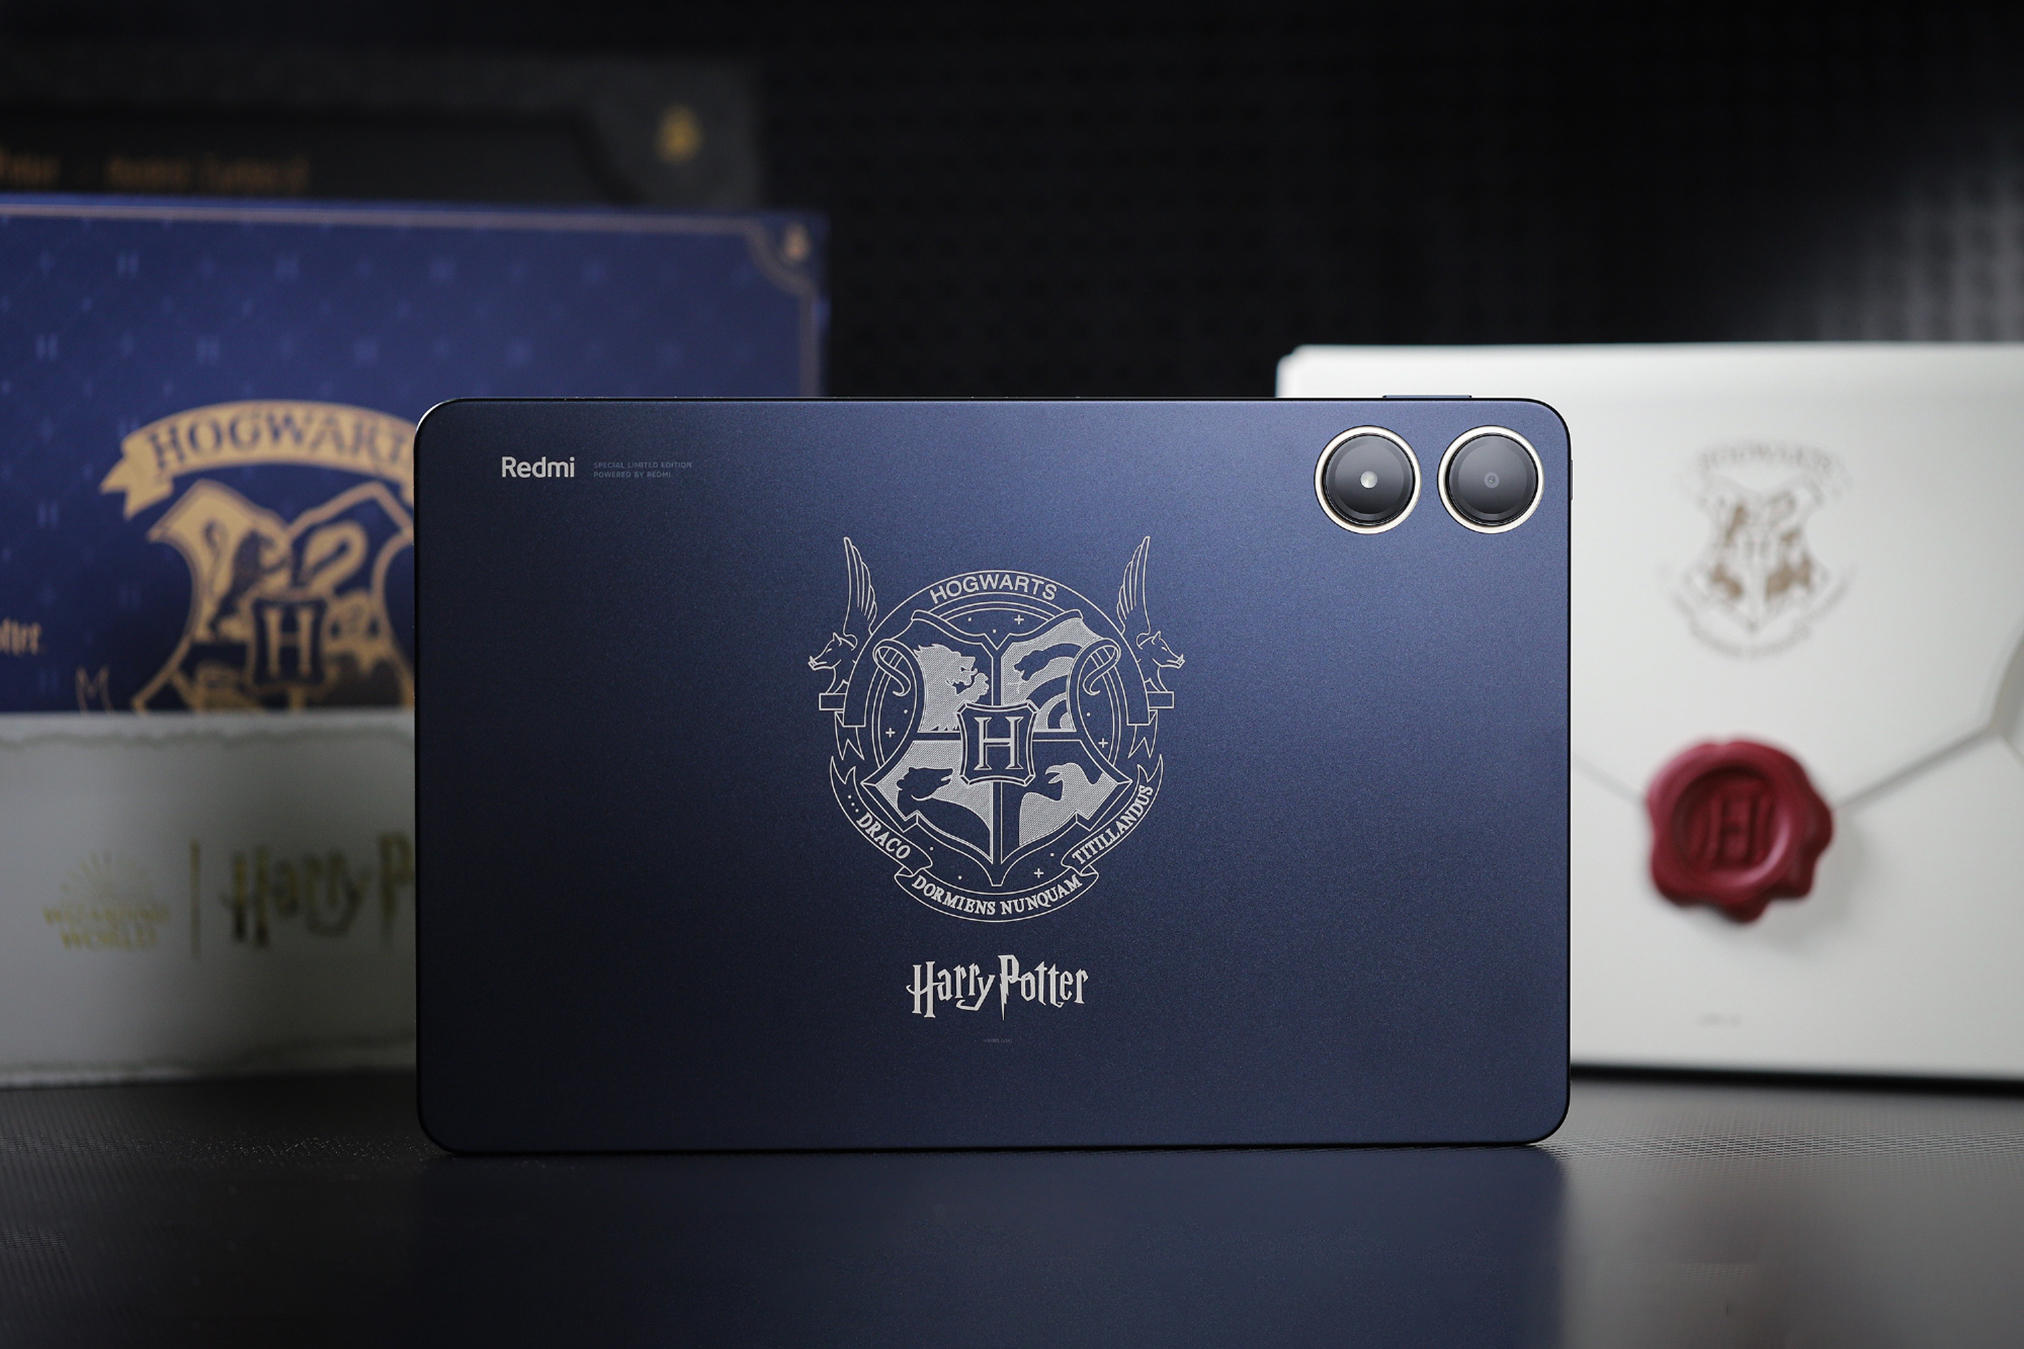 Cận cảnh máy tính bảng 12 inch giá rẻ của Xiaomi: Thiết kế đẹp như iPad, có cả bản Harry Potter đặc biệt cho các Potterheads mà giá chỉ hơn 5 triệu đồng- Ảnh 18.